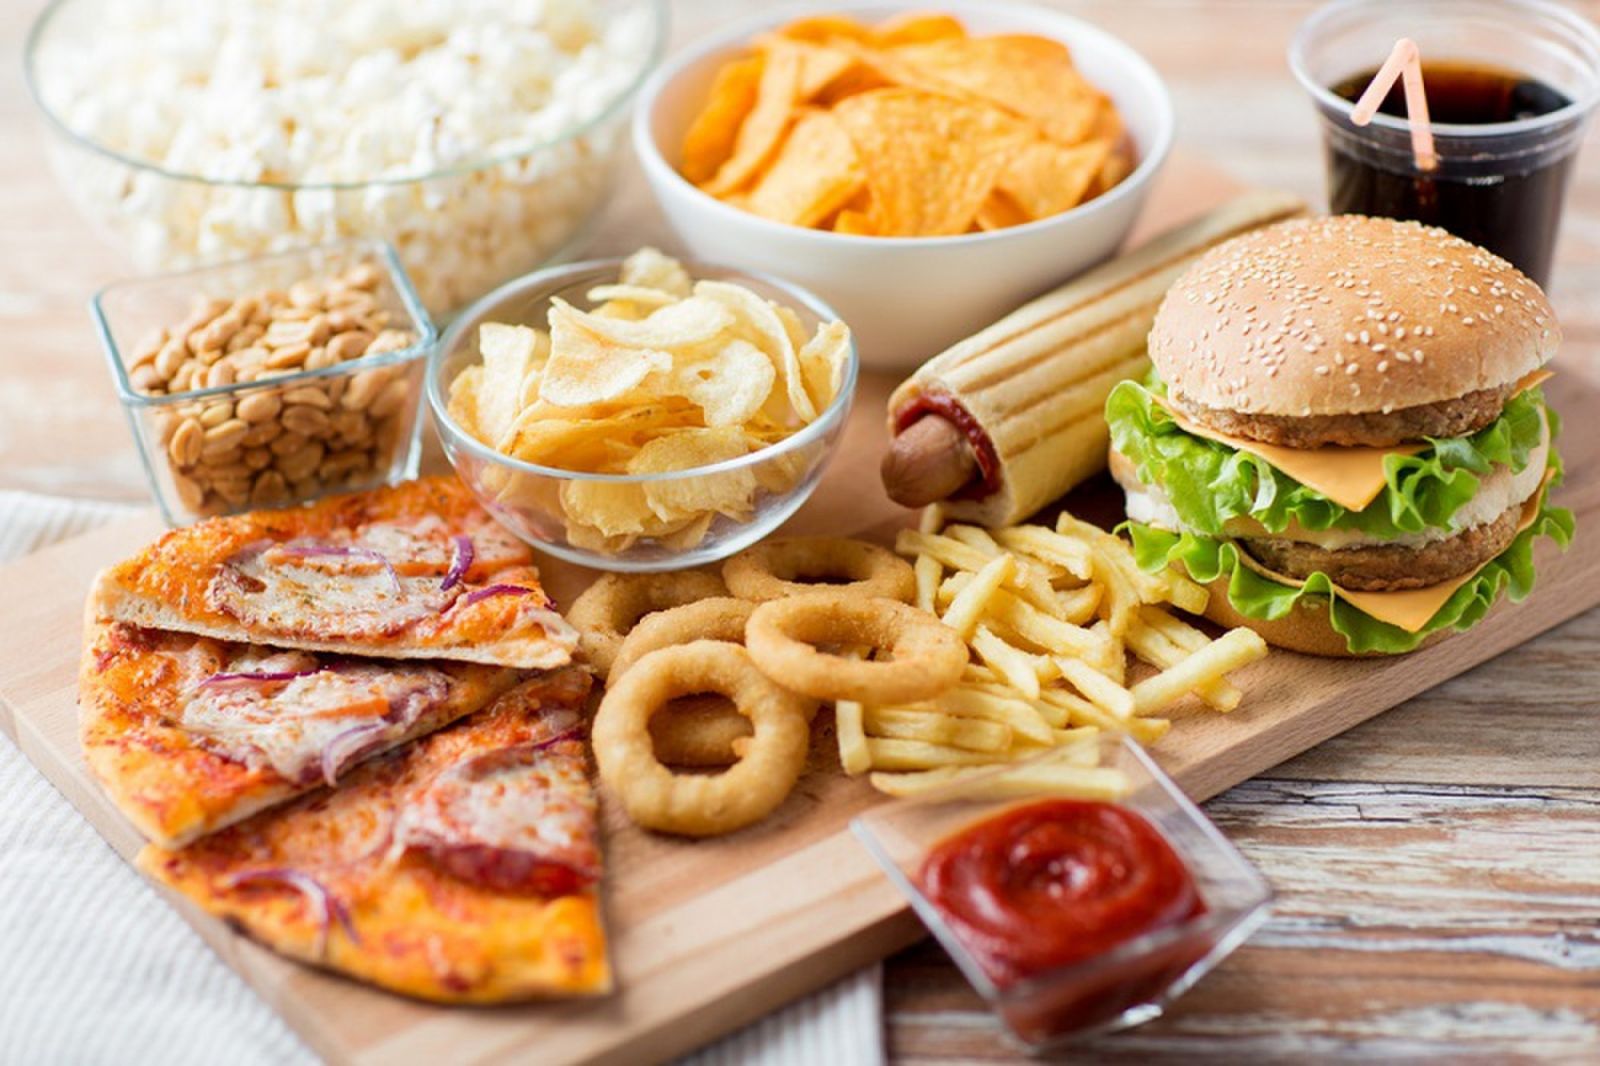 Tiêu thụ quá nhiều đồ ăn chế biến sẵn là nguyên nhân gây ung thư đại tràng